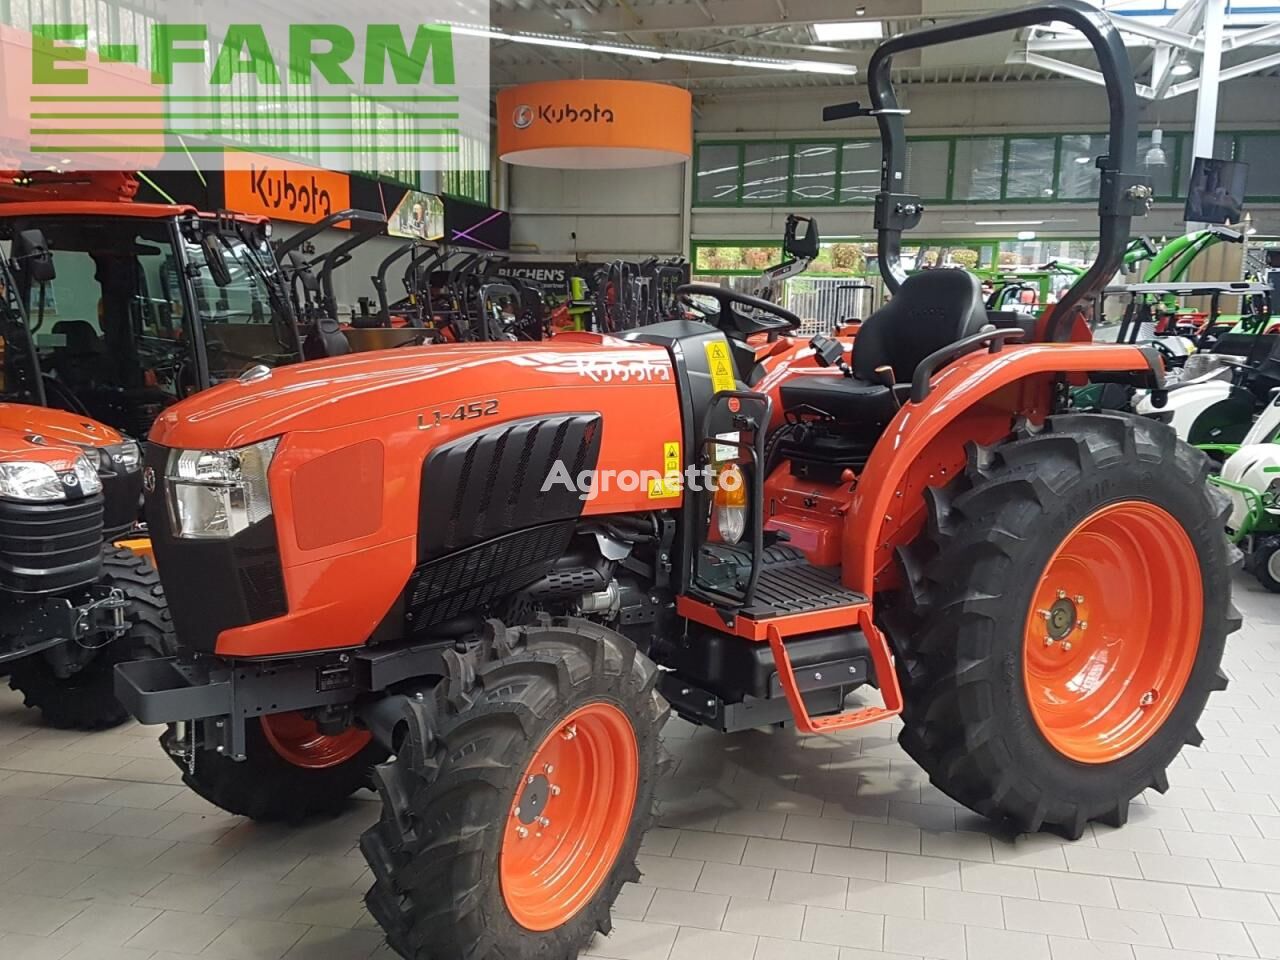 l1-452 ab 0,99 % finanzierung wheel tractor